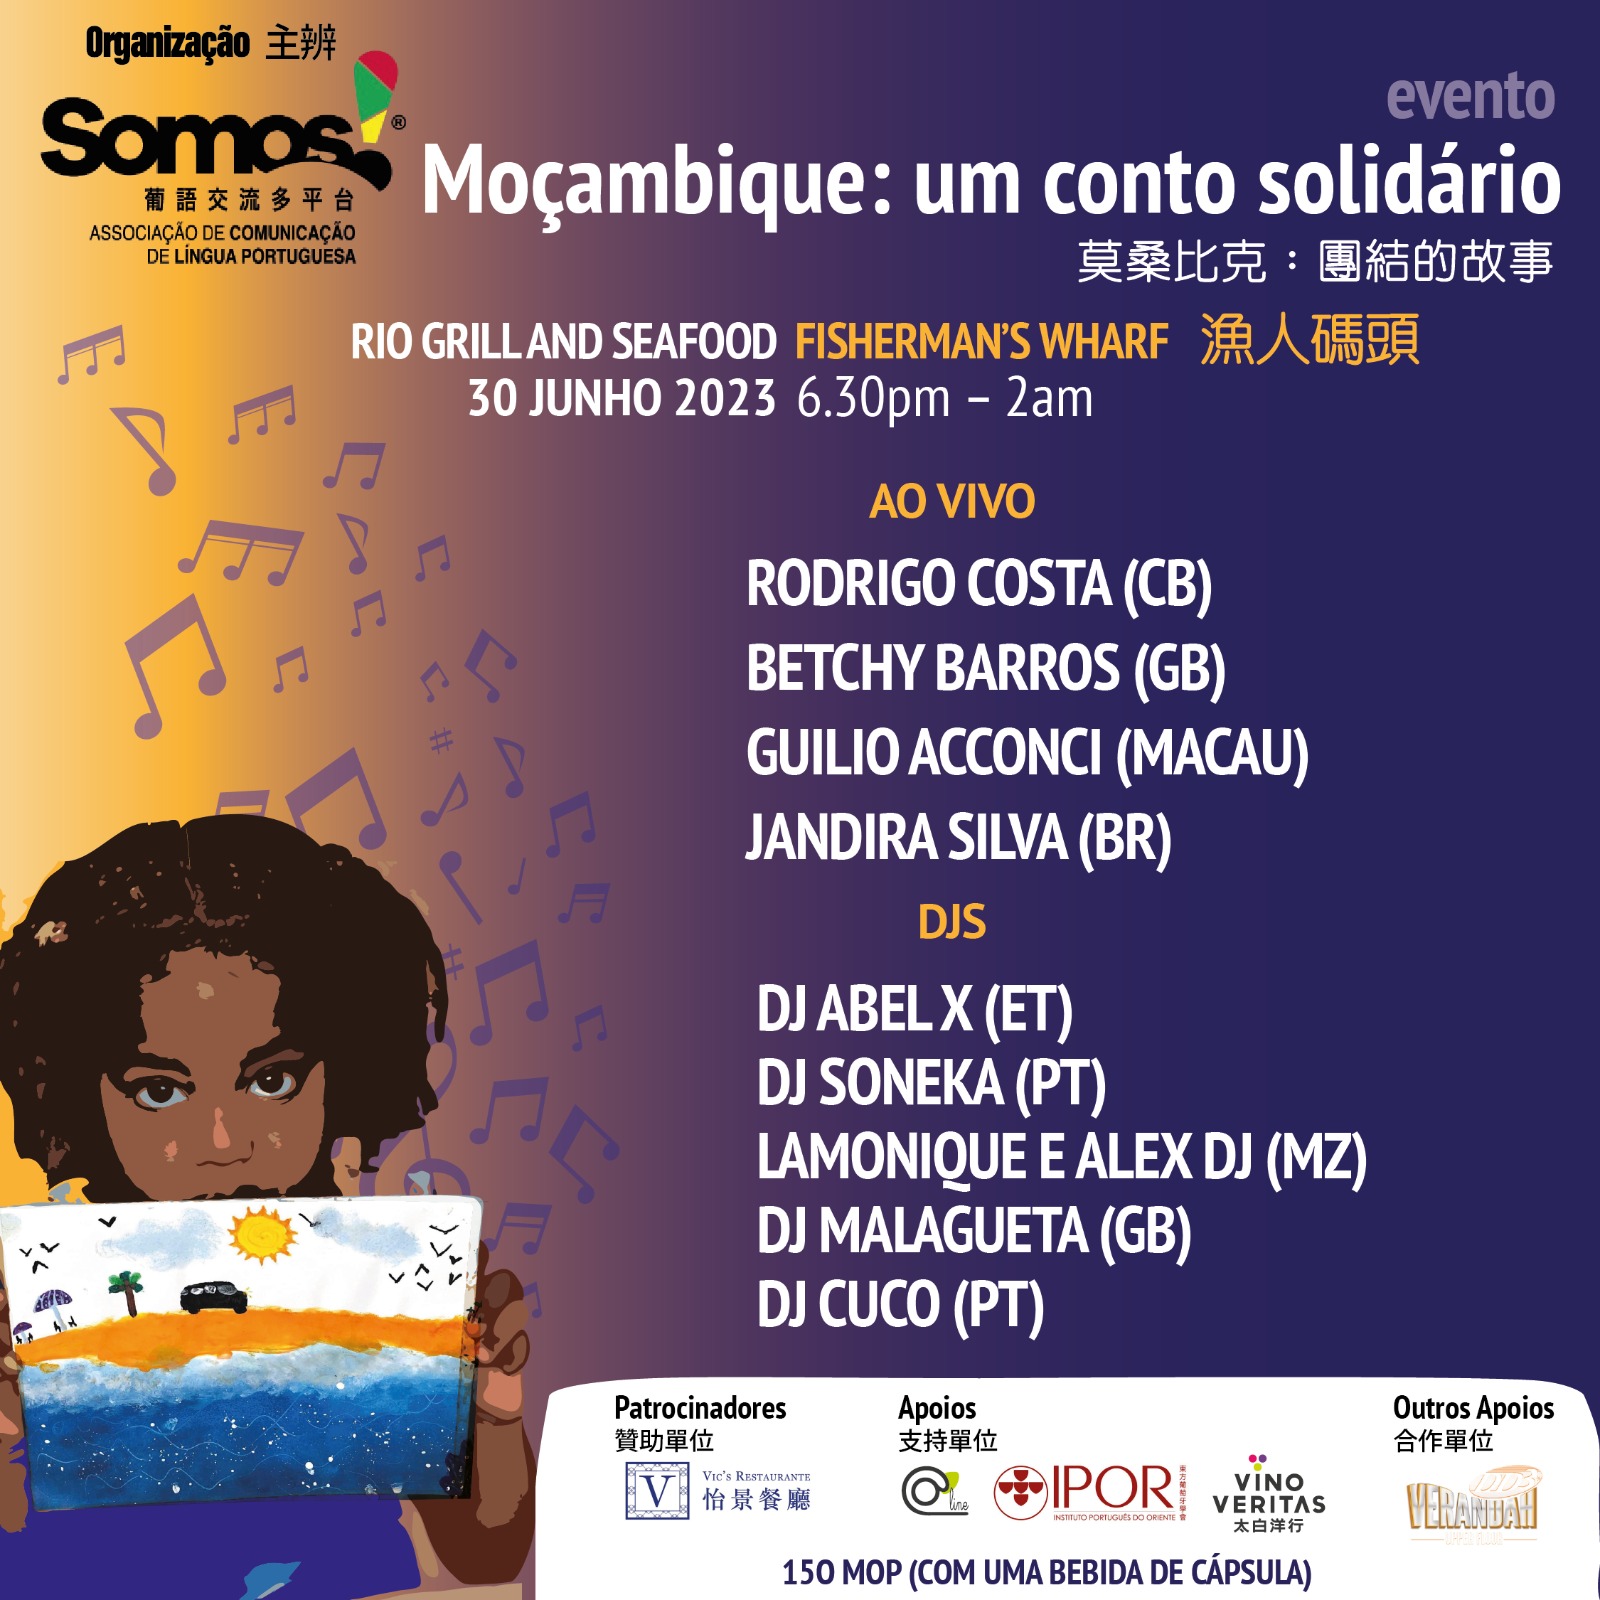 Associação Somos! apoia escola de Moçambique com evento solidário